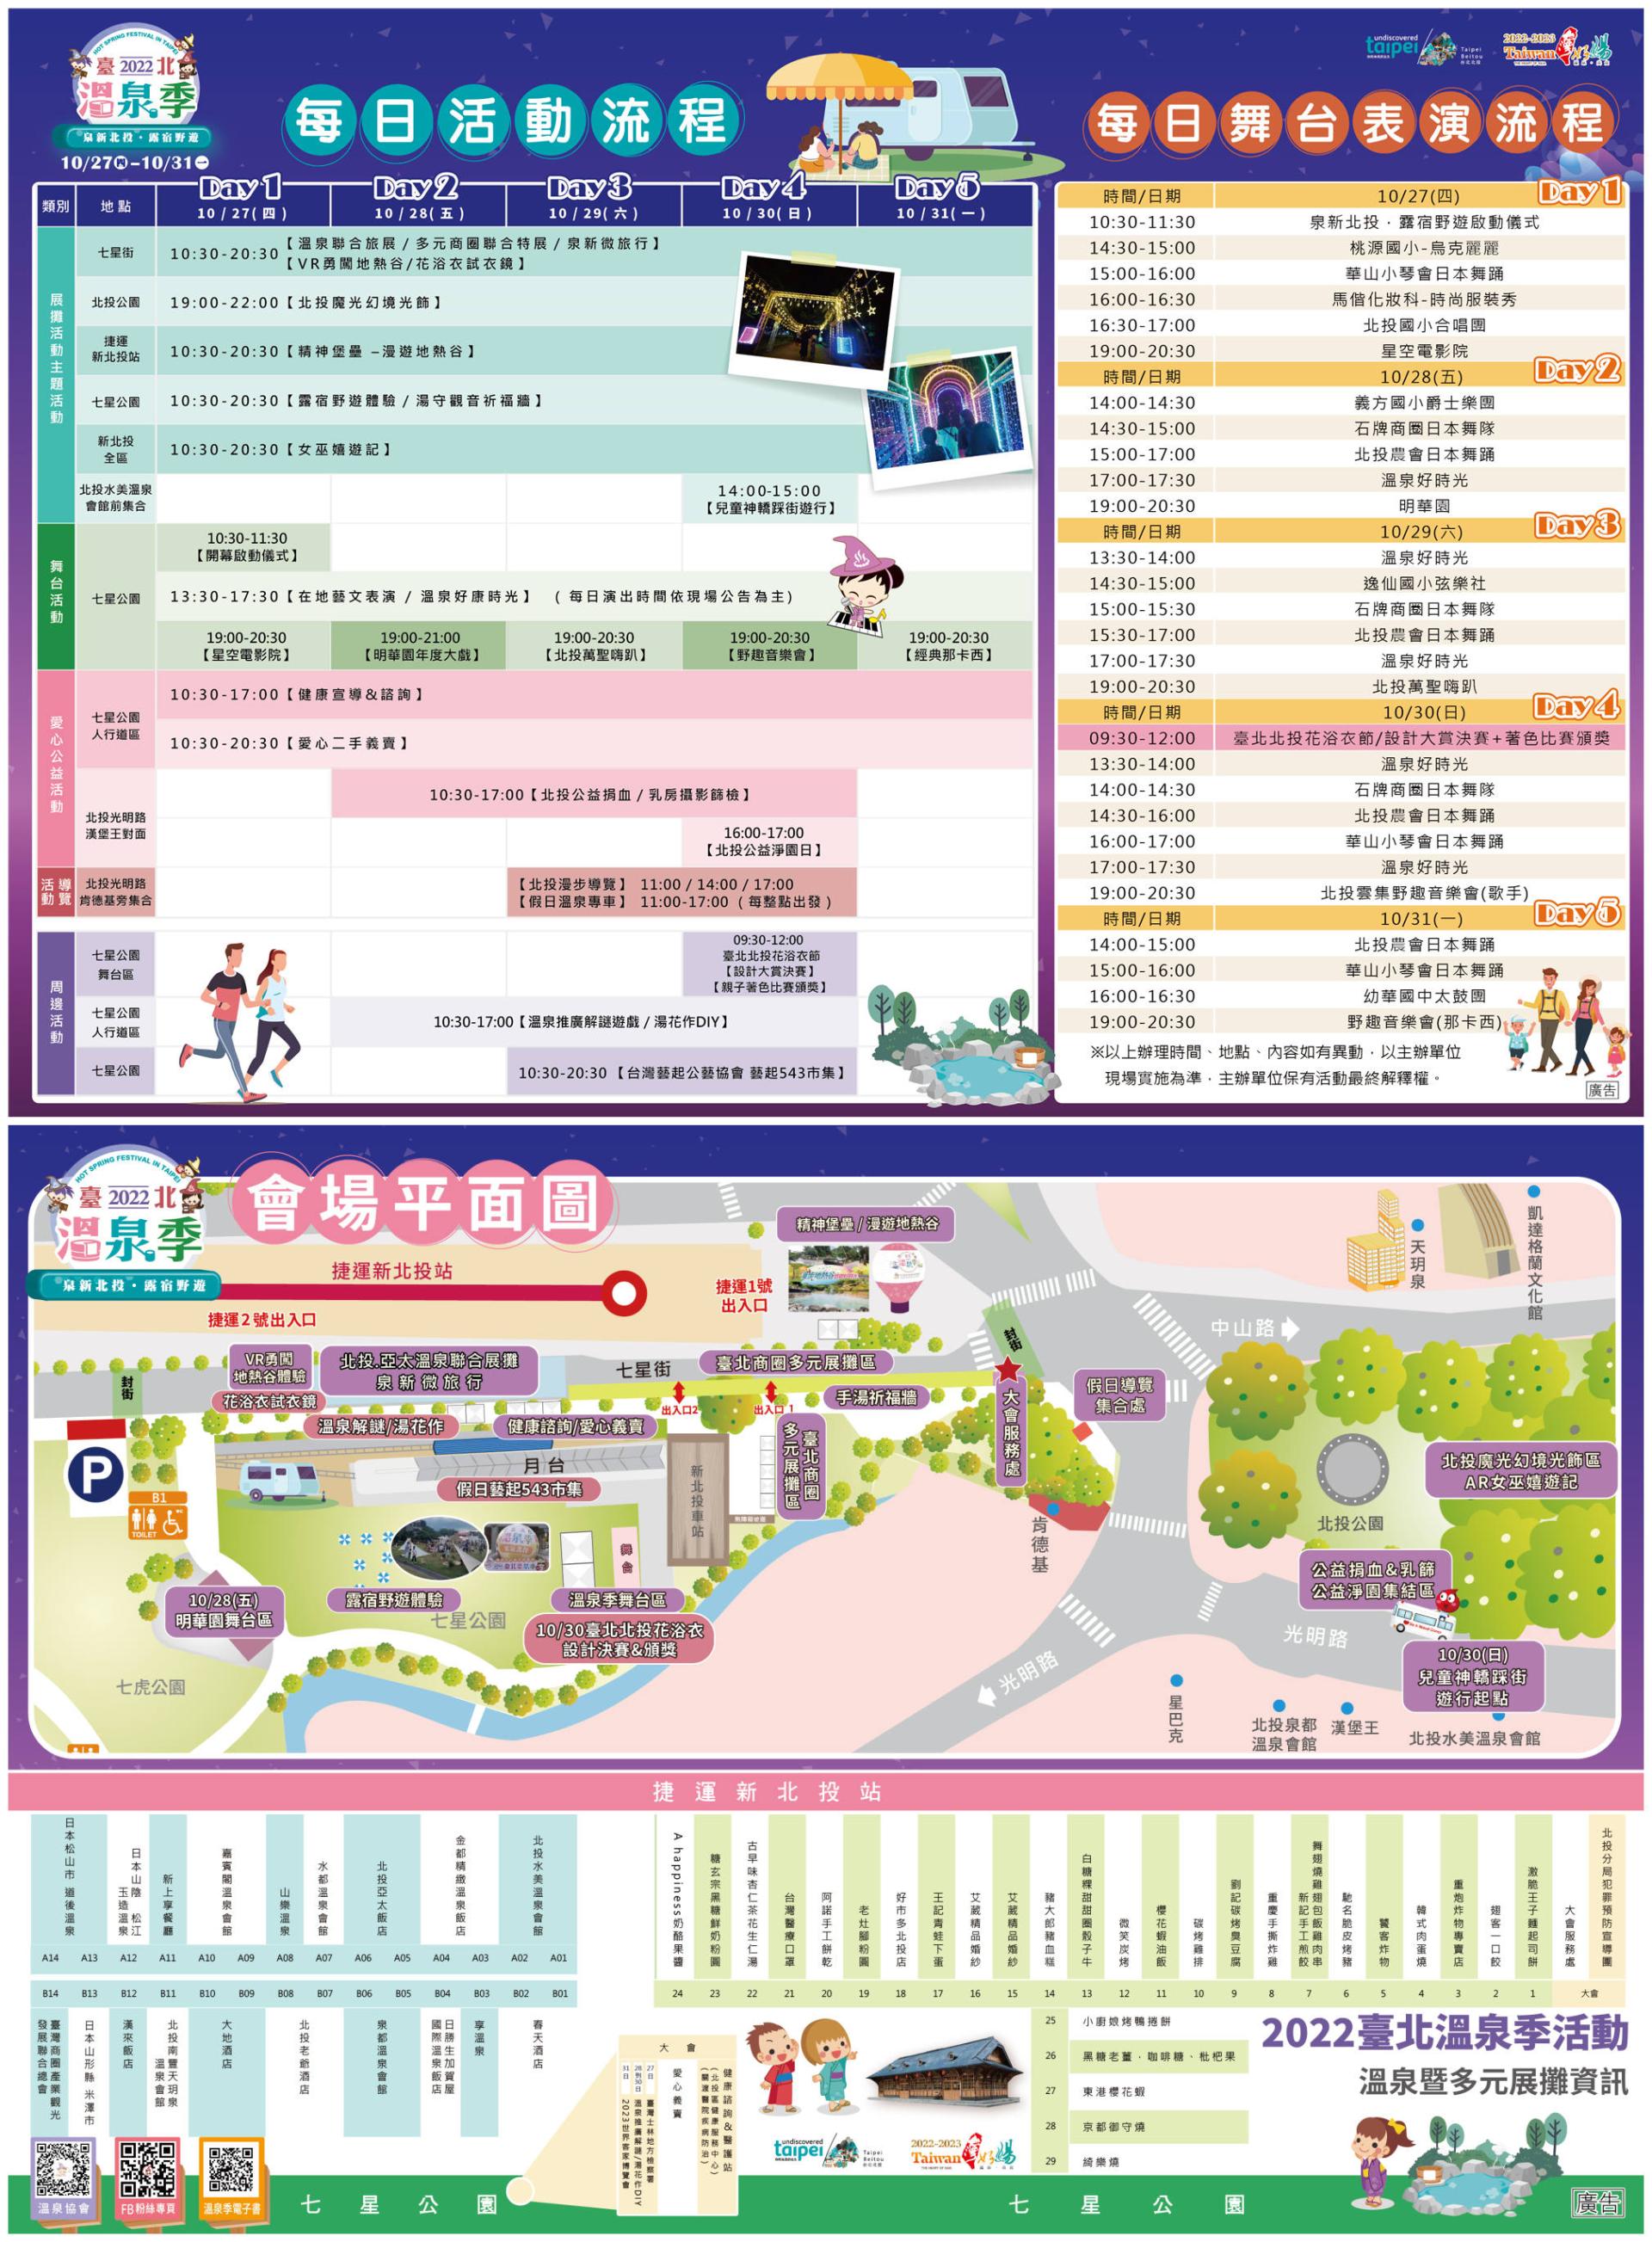 2022 타이베이 온천축제(臺北溫泉季).jpg